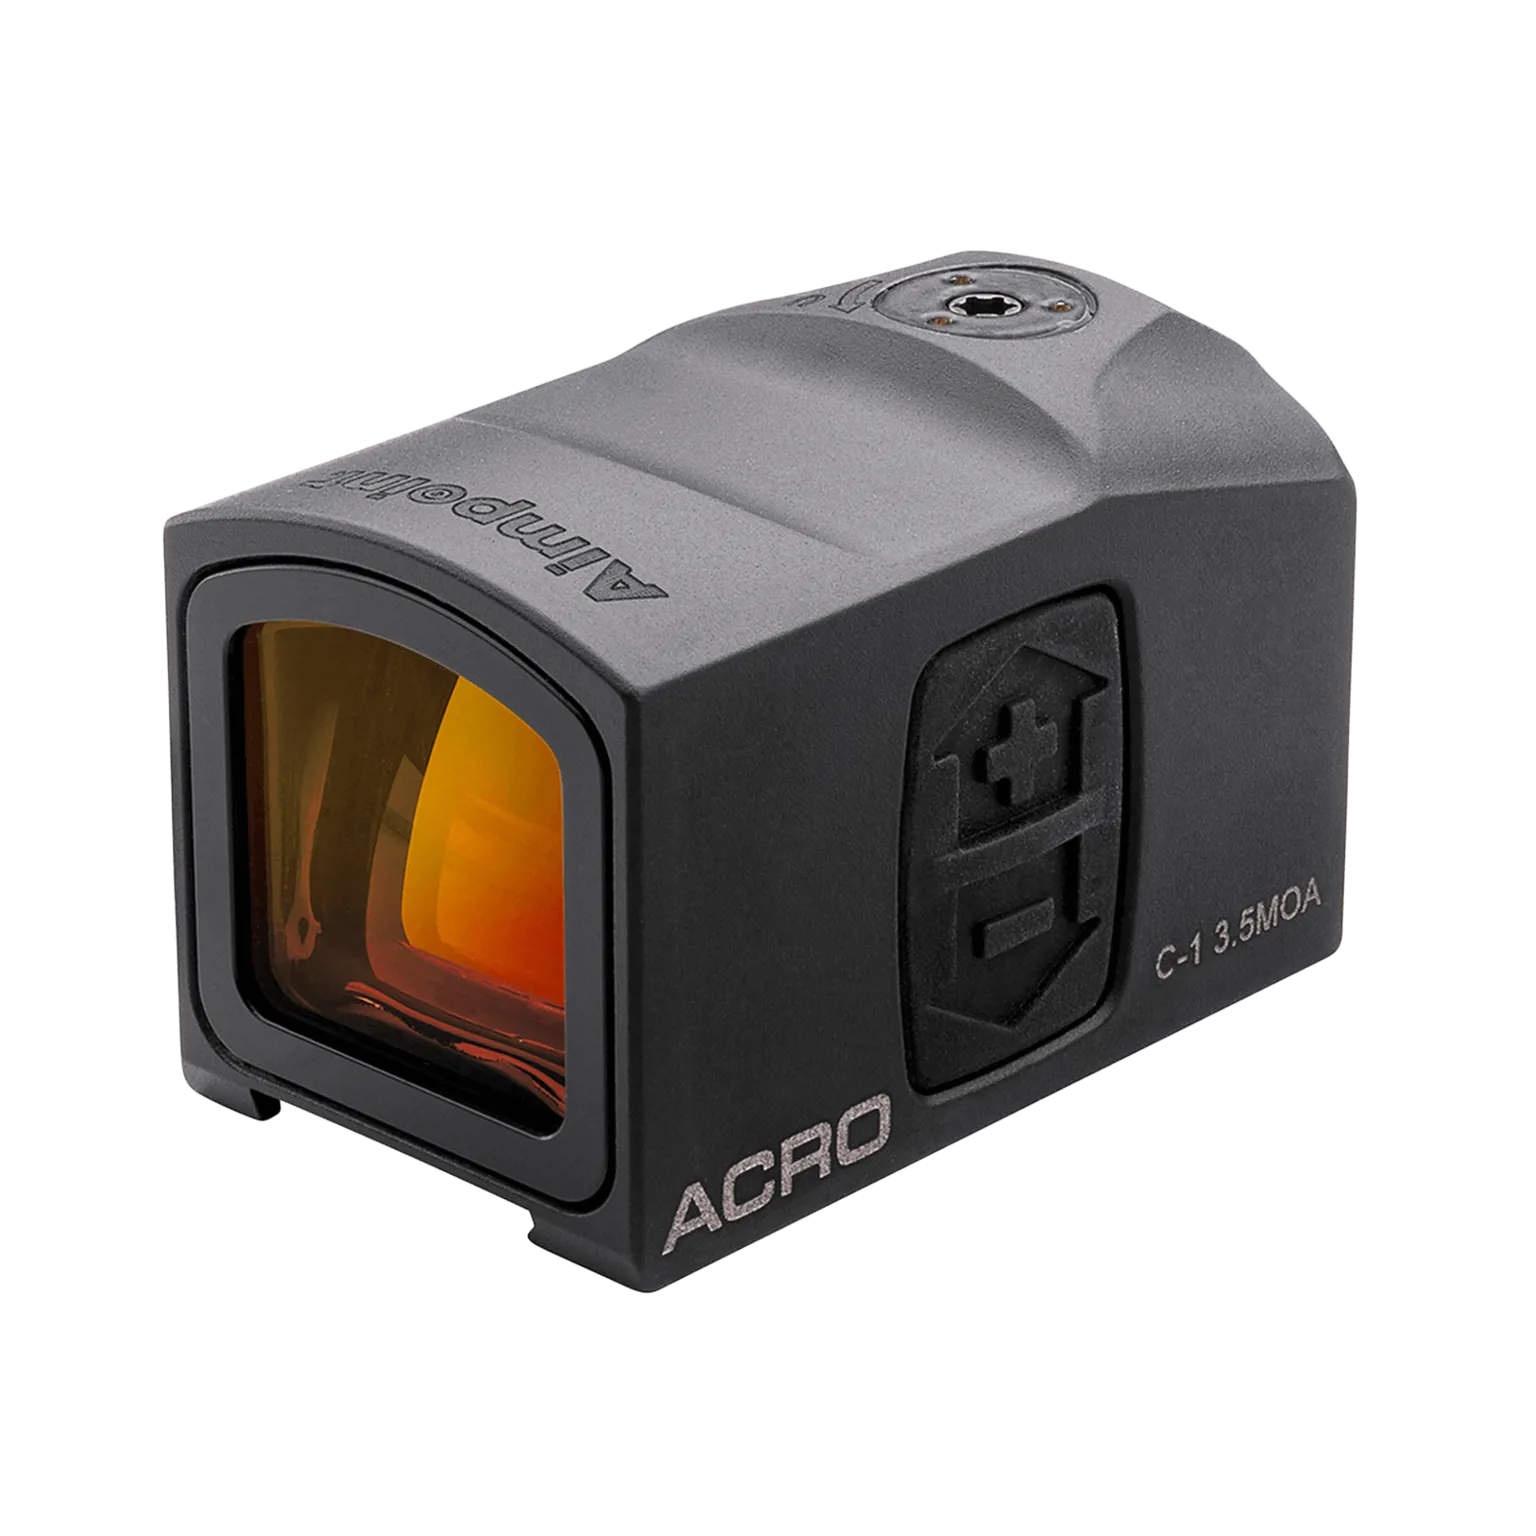 Acro C-1™ 3.5 MOA - Viseur point rouge avec interface Acro™ intégrée - 1